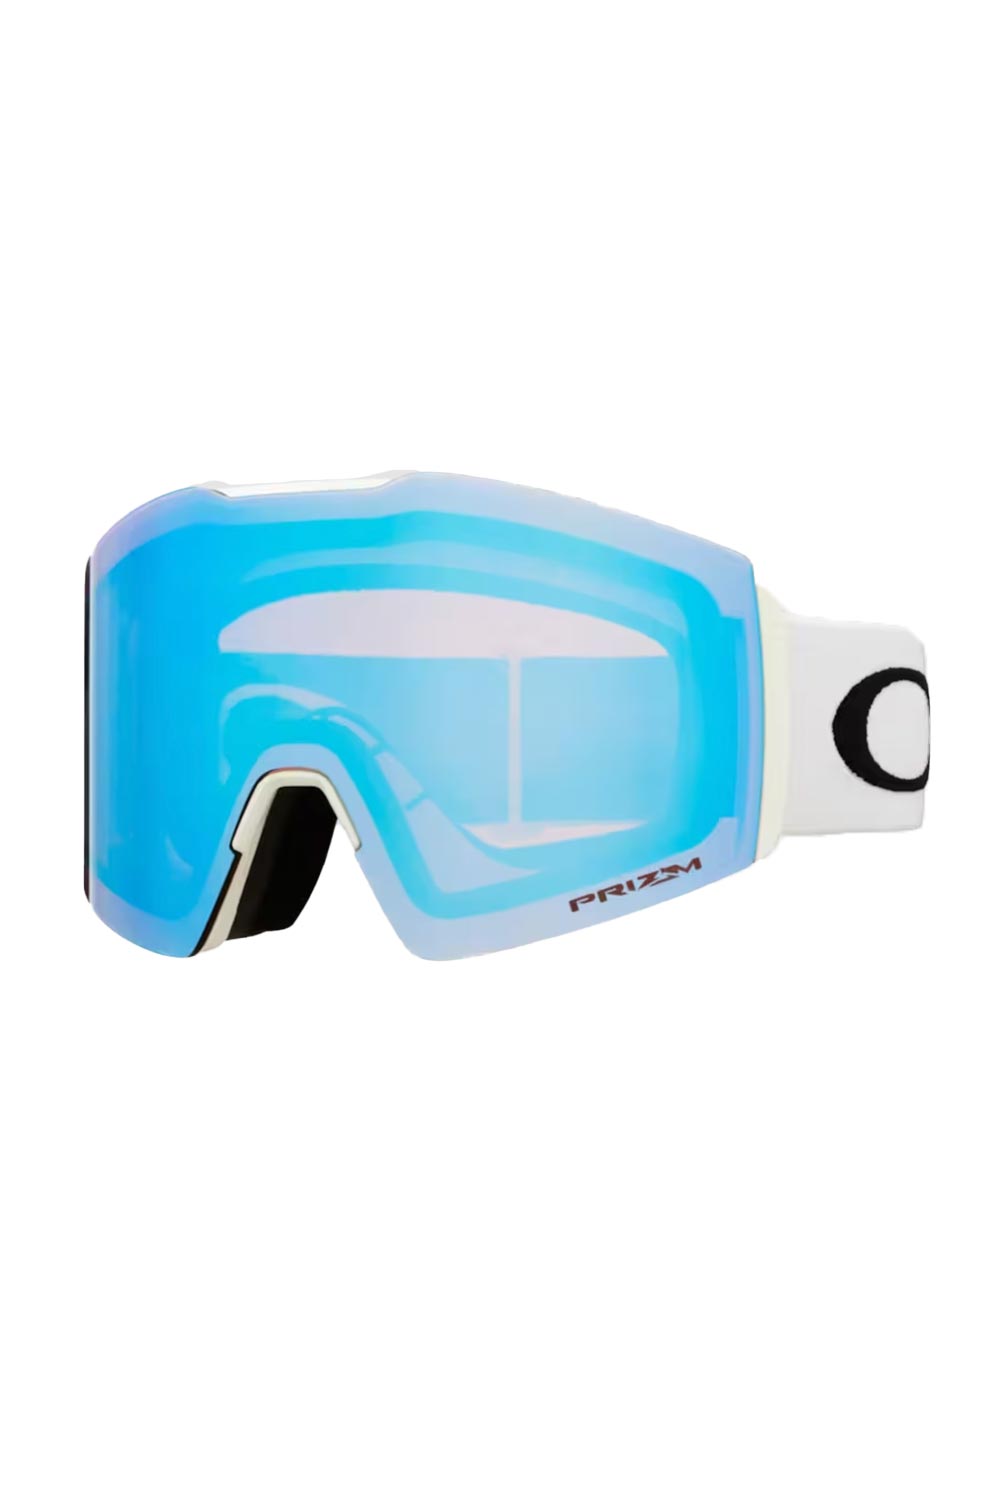 Oakley ski/snowboard goggles, white strap blue lens